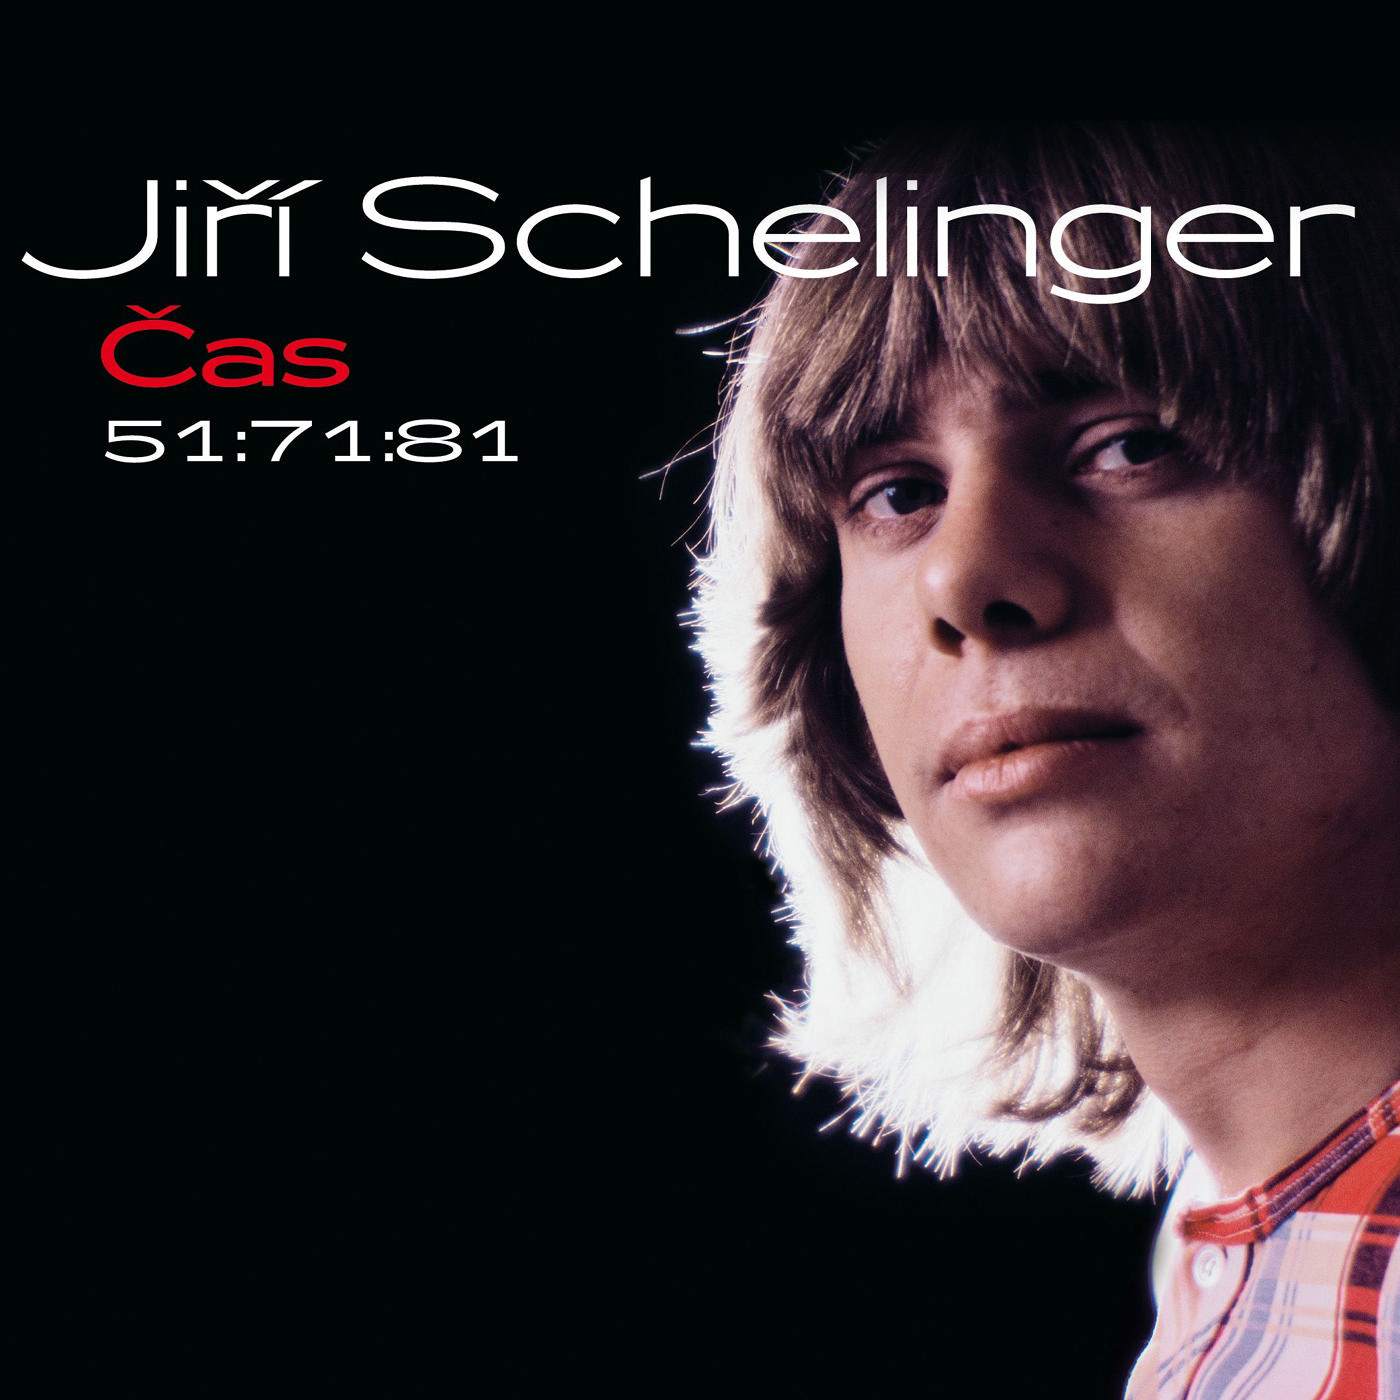 CD Shop - SCHELINGER JIRI CAS 51:71:81 (ZLATA KOLEKCE)